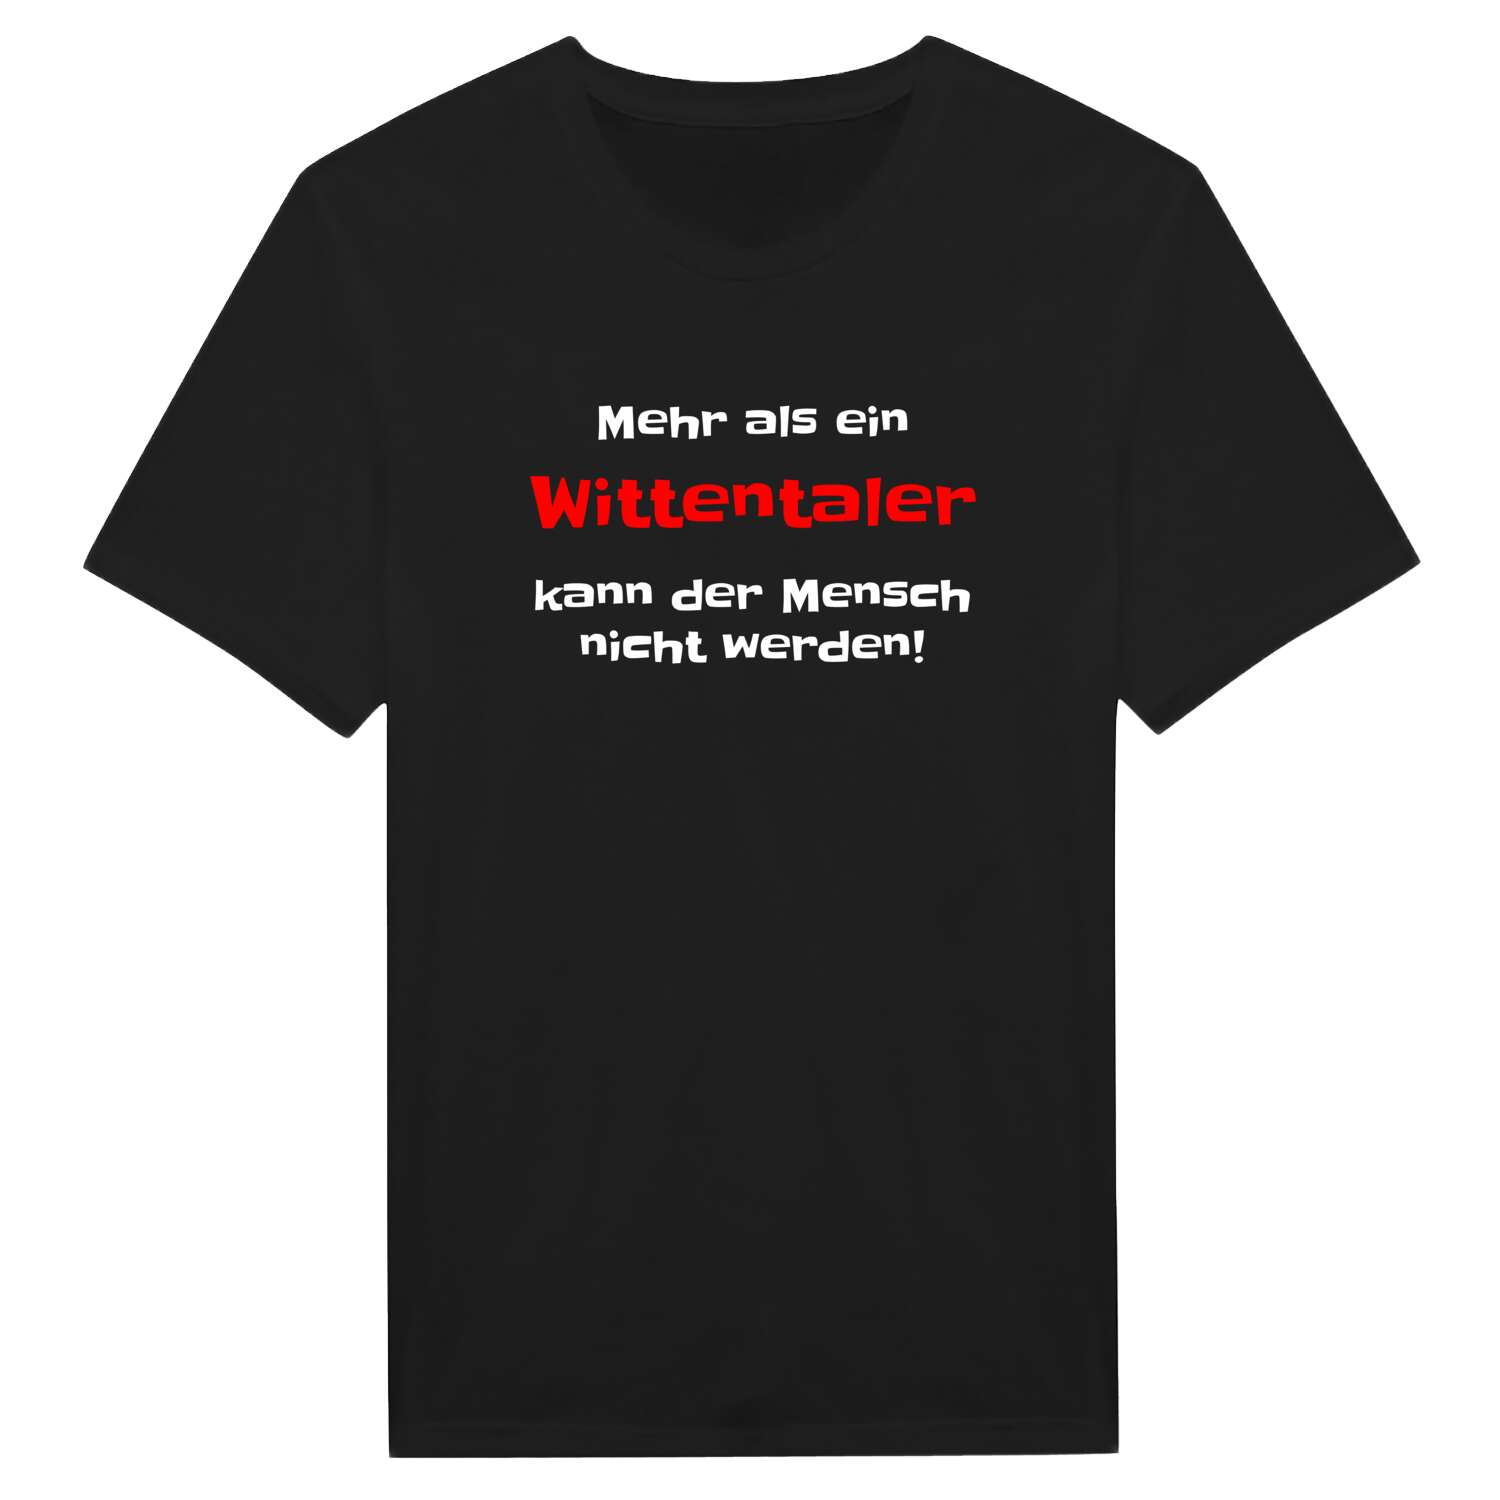 Wittental T-Shirt »Mehr als ein«